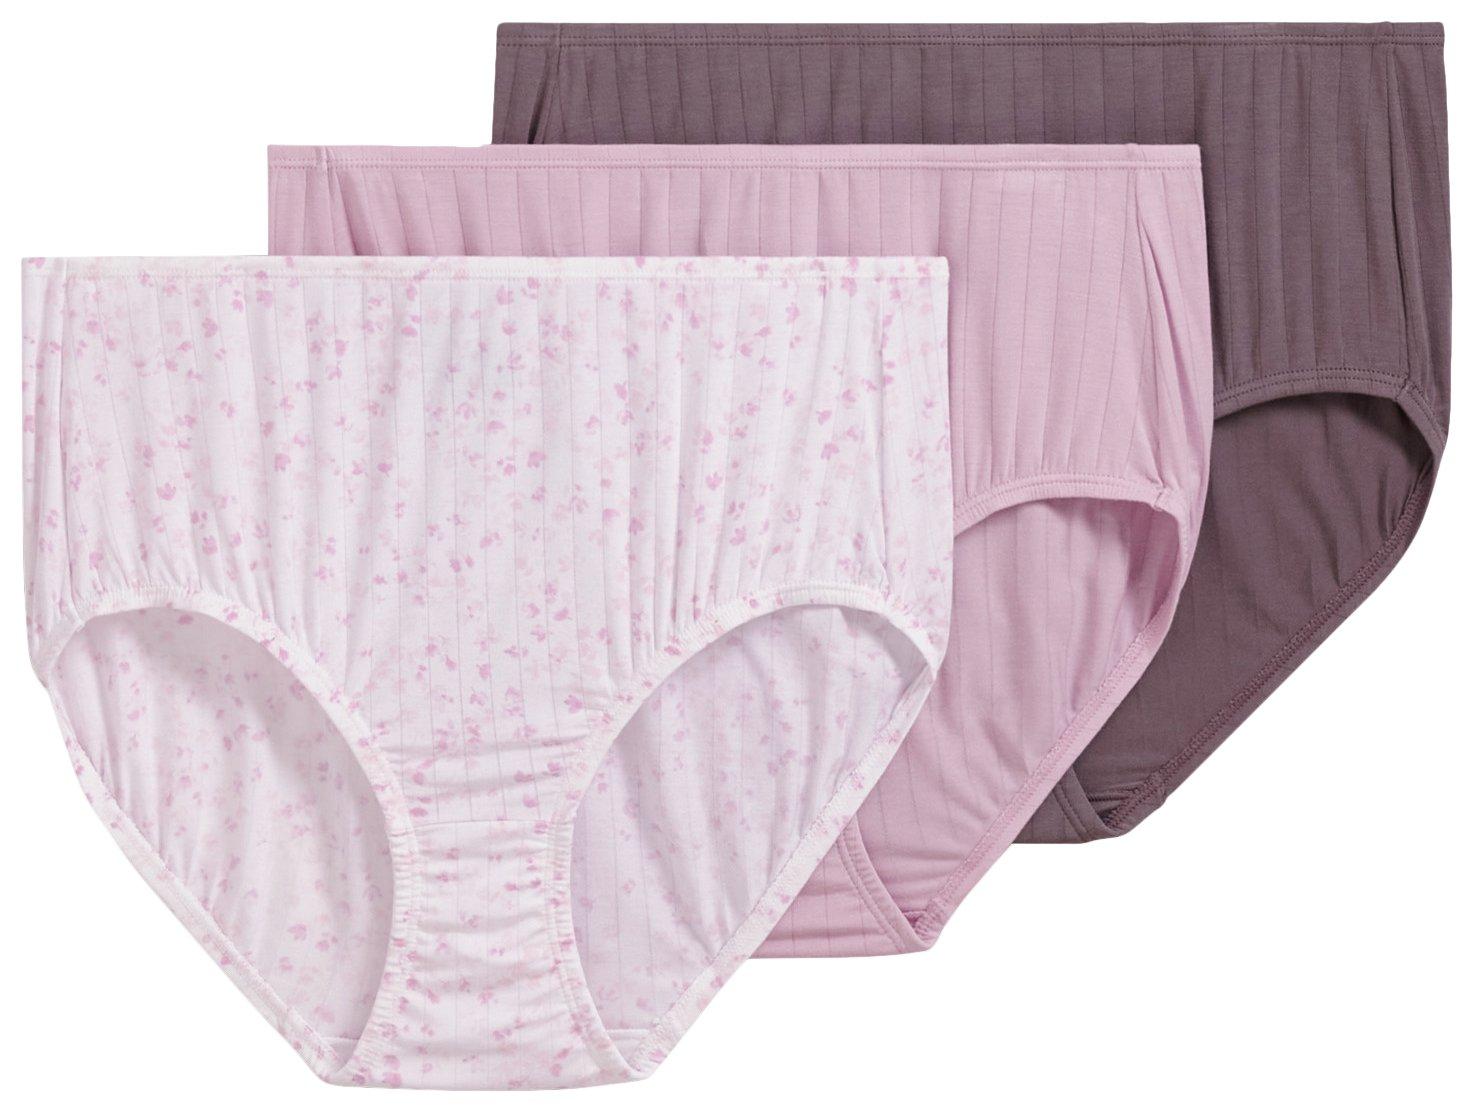 Pink Soft Panties